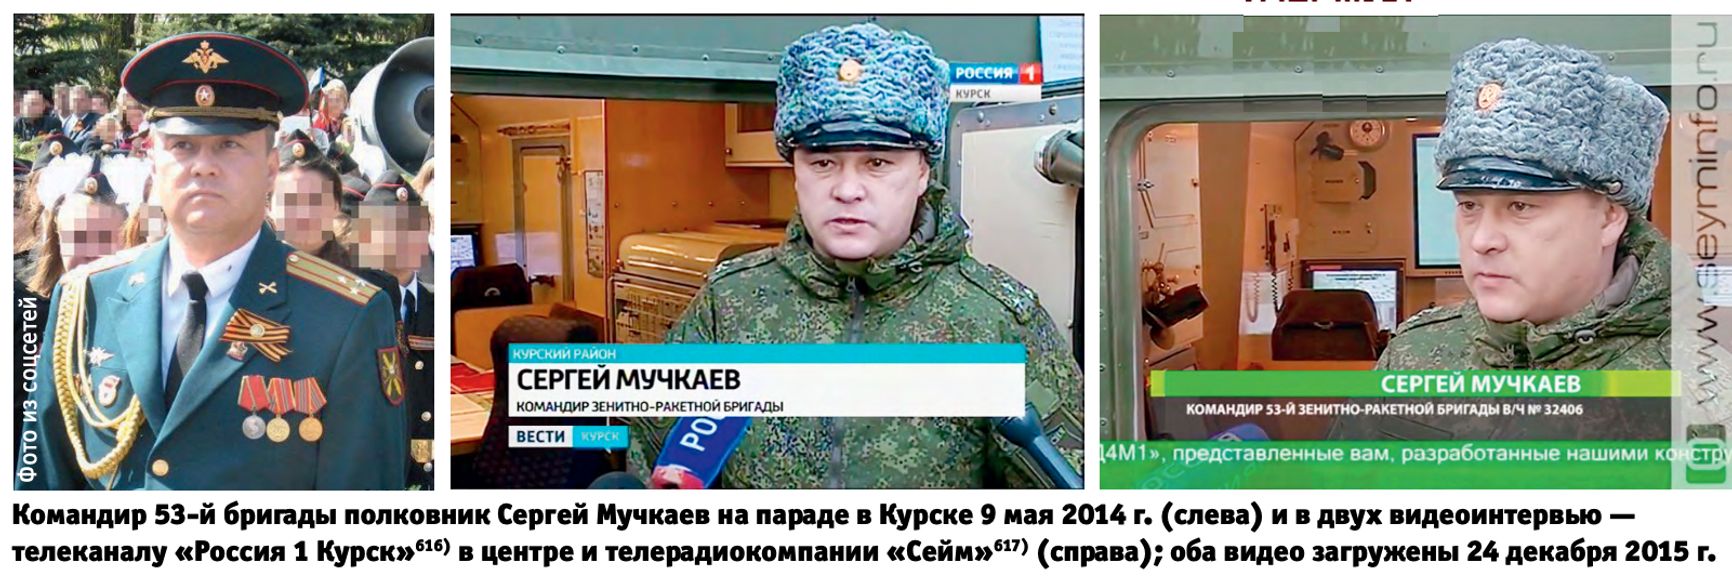 Командир 53-й бригады полковник Сергей Мучкаев на параде в Курске 9 мая 2014 г. (слева) и в двух видеоинтервью — телеканалу «Россия 1 Курск»616) в центре и телерадиокомпании «Сейм»617) (справа); оба видео загружены 24 декабря 2015 г.